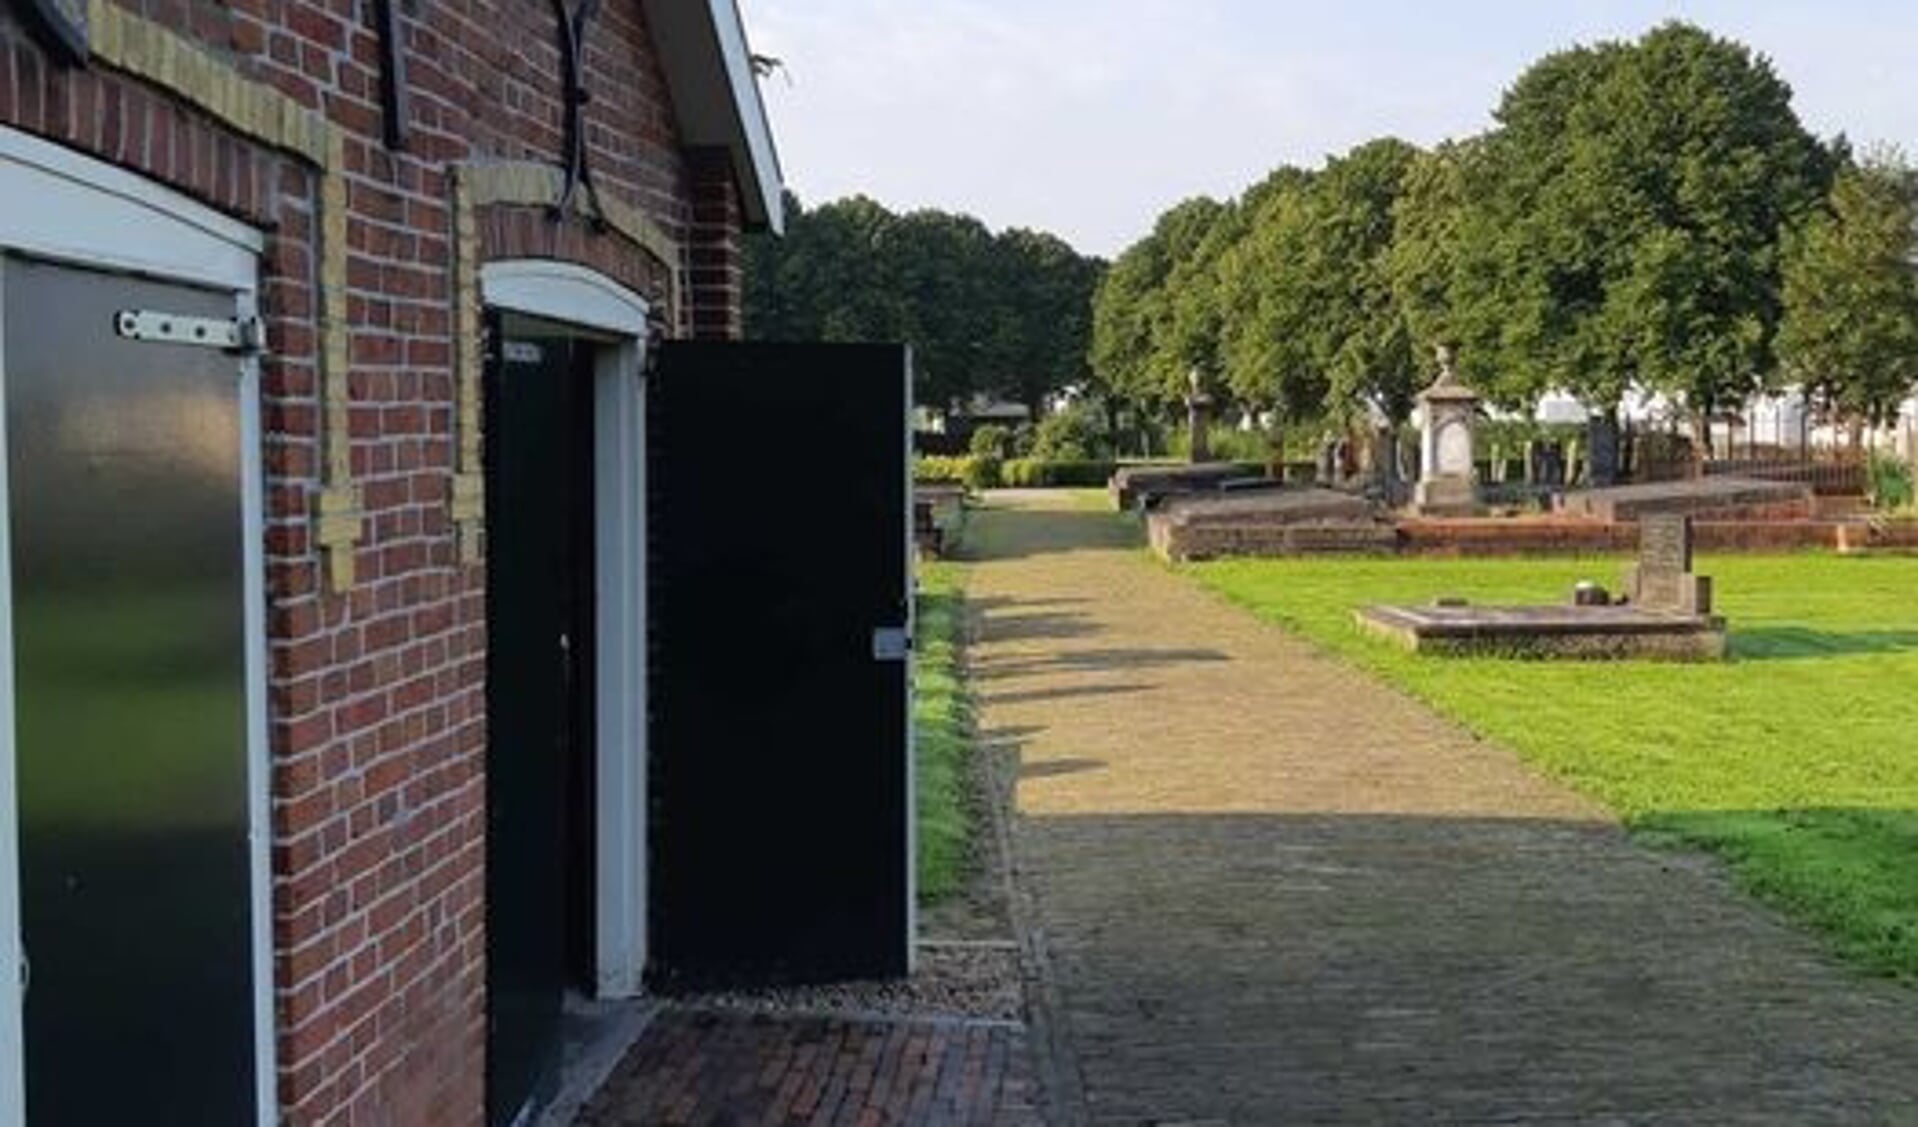 De opslagruimte op de begraafplaats in Farmsum, waar is ingebroken (foto Politie).